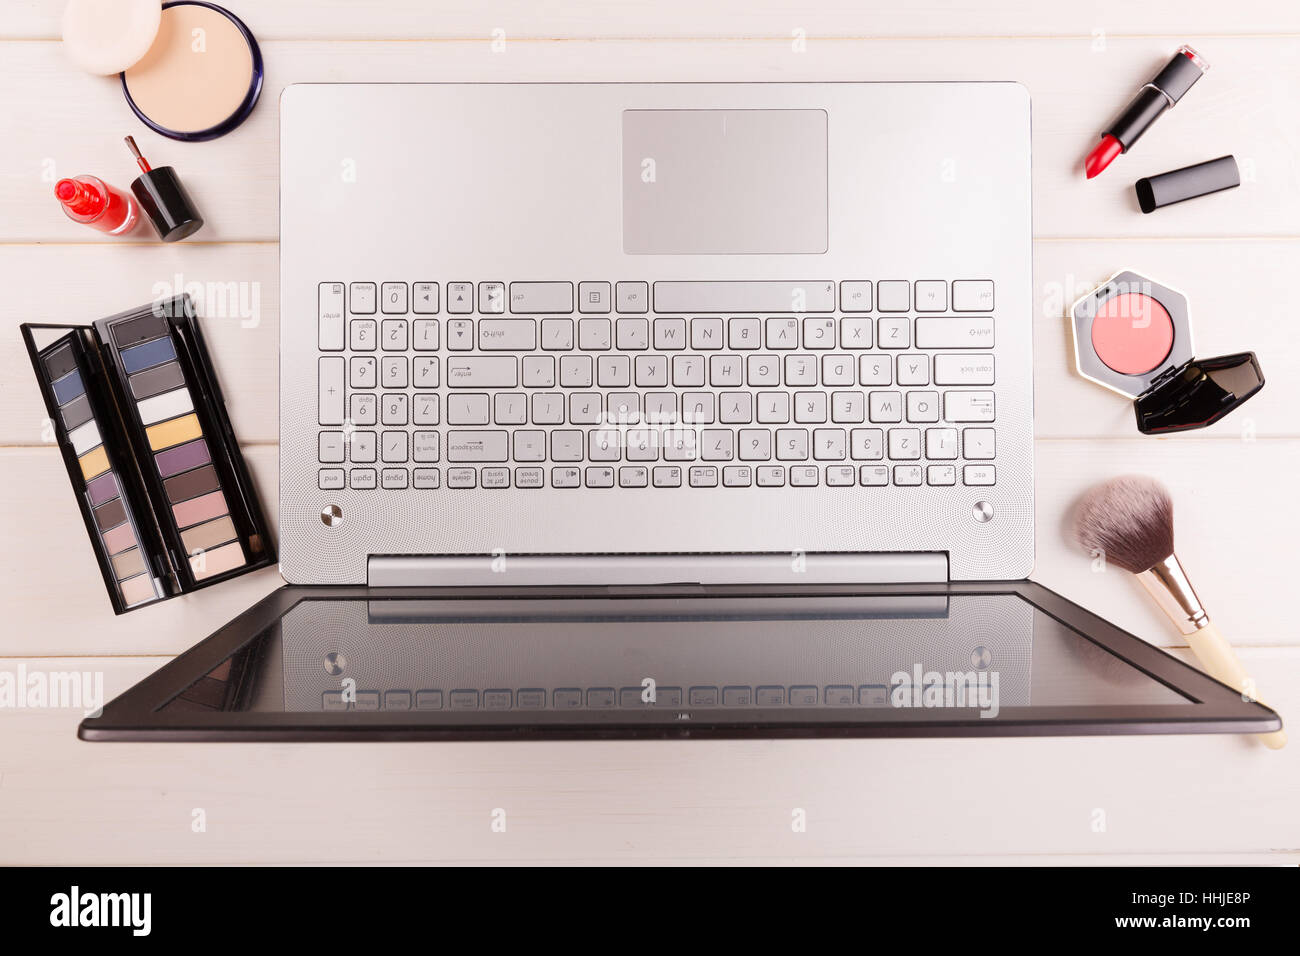 Arbeitsplatz für Fashion-Bloggerin, Laptop und Kosmetik auf dem Tisch Stockfoto